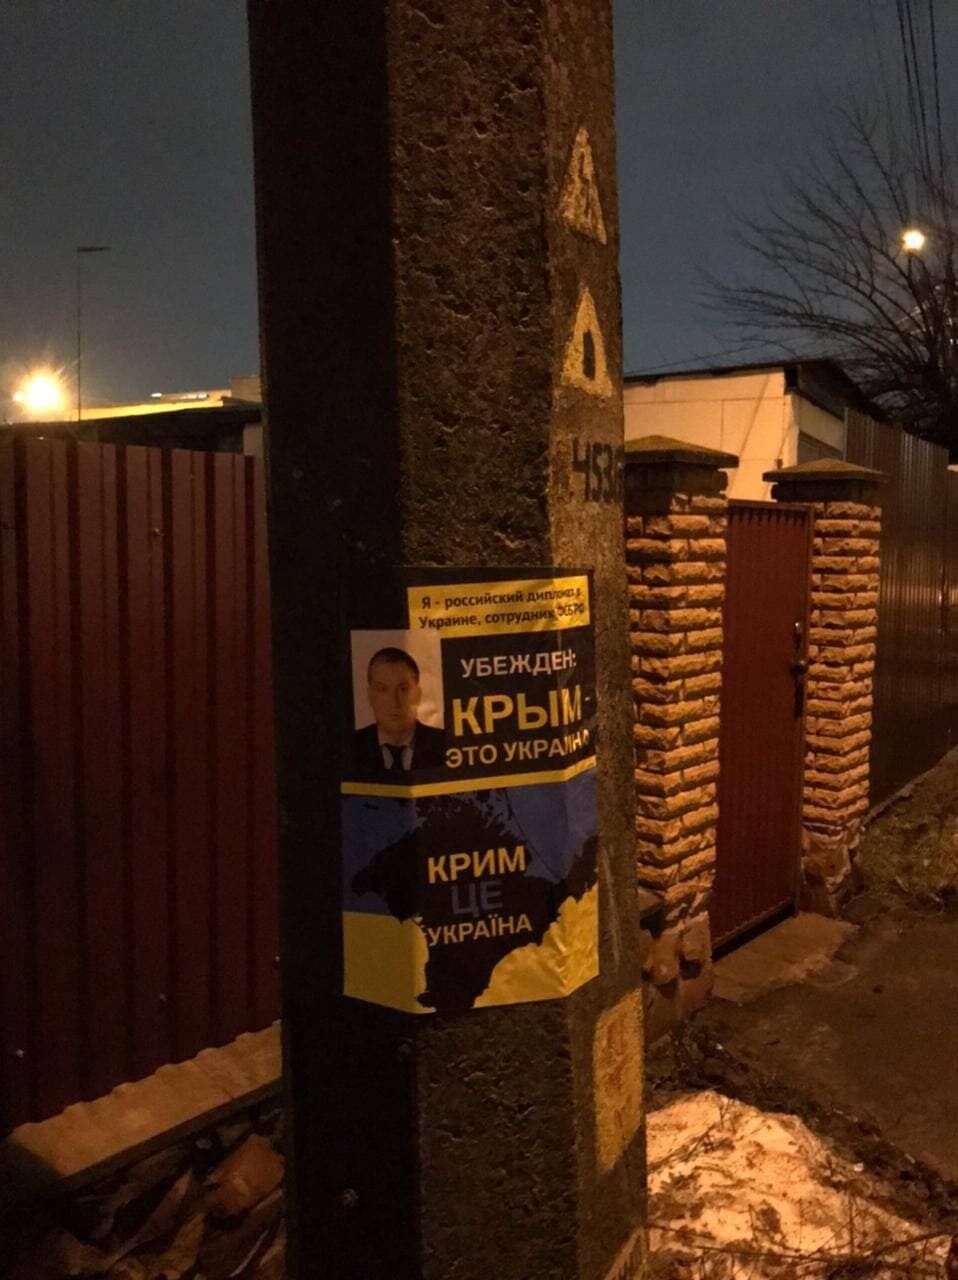 Біля місця проживання російських дипломатів в Україні також з'явилися плакати про Крим